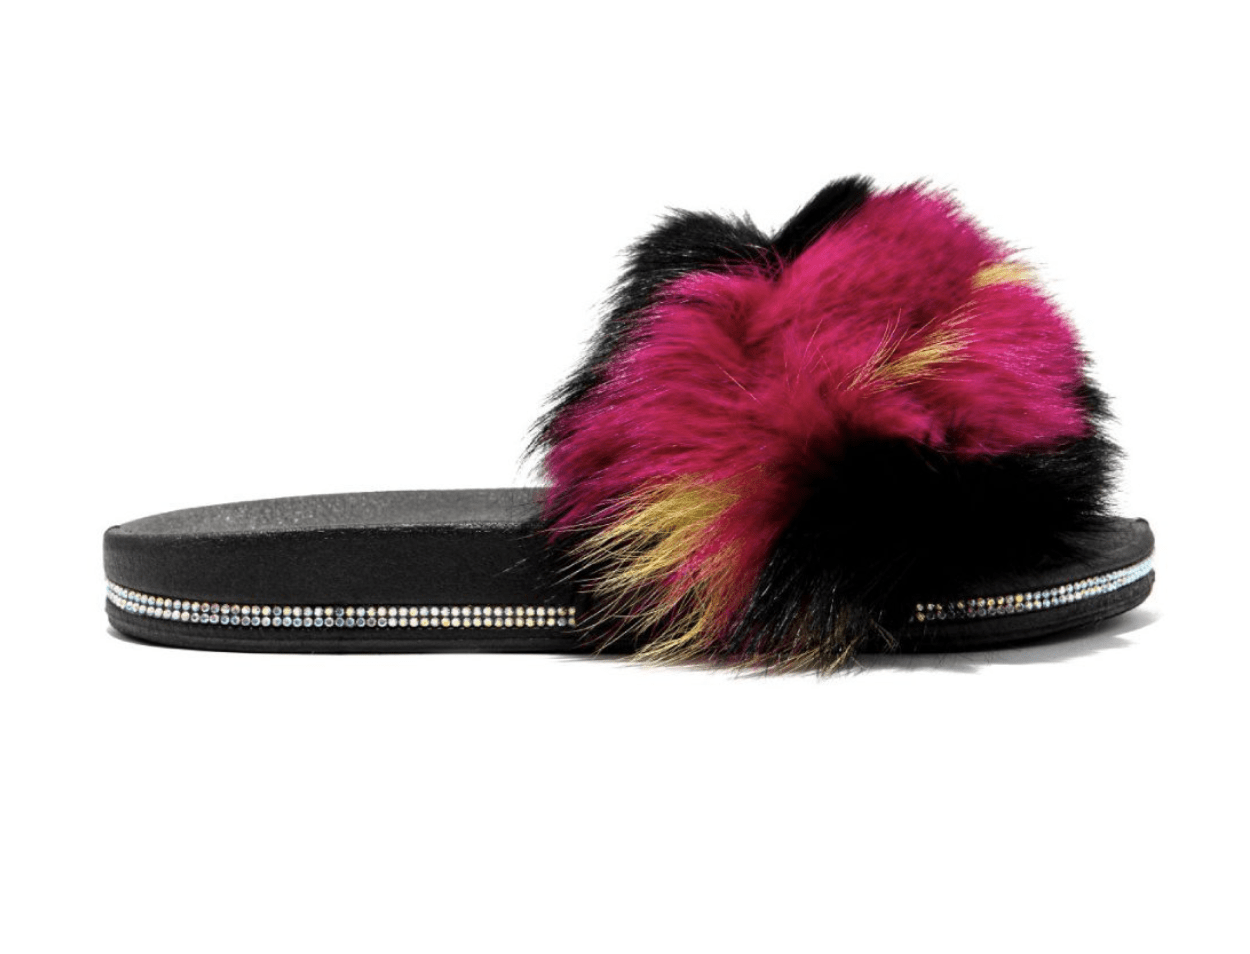 Cape Robbin Shoes Fur Black Multi Color With Mini Rhinestones Slides